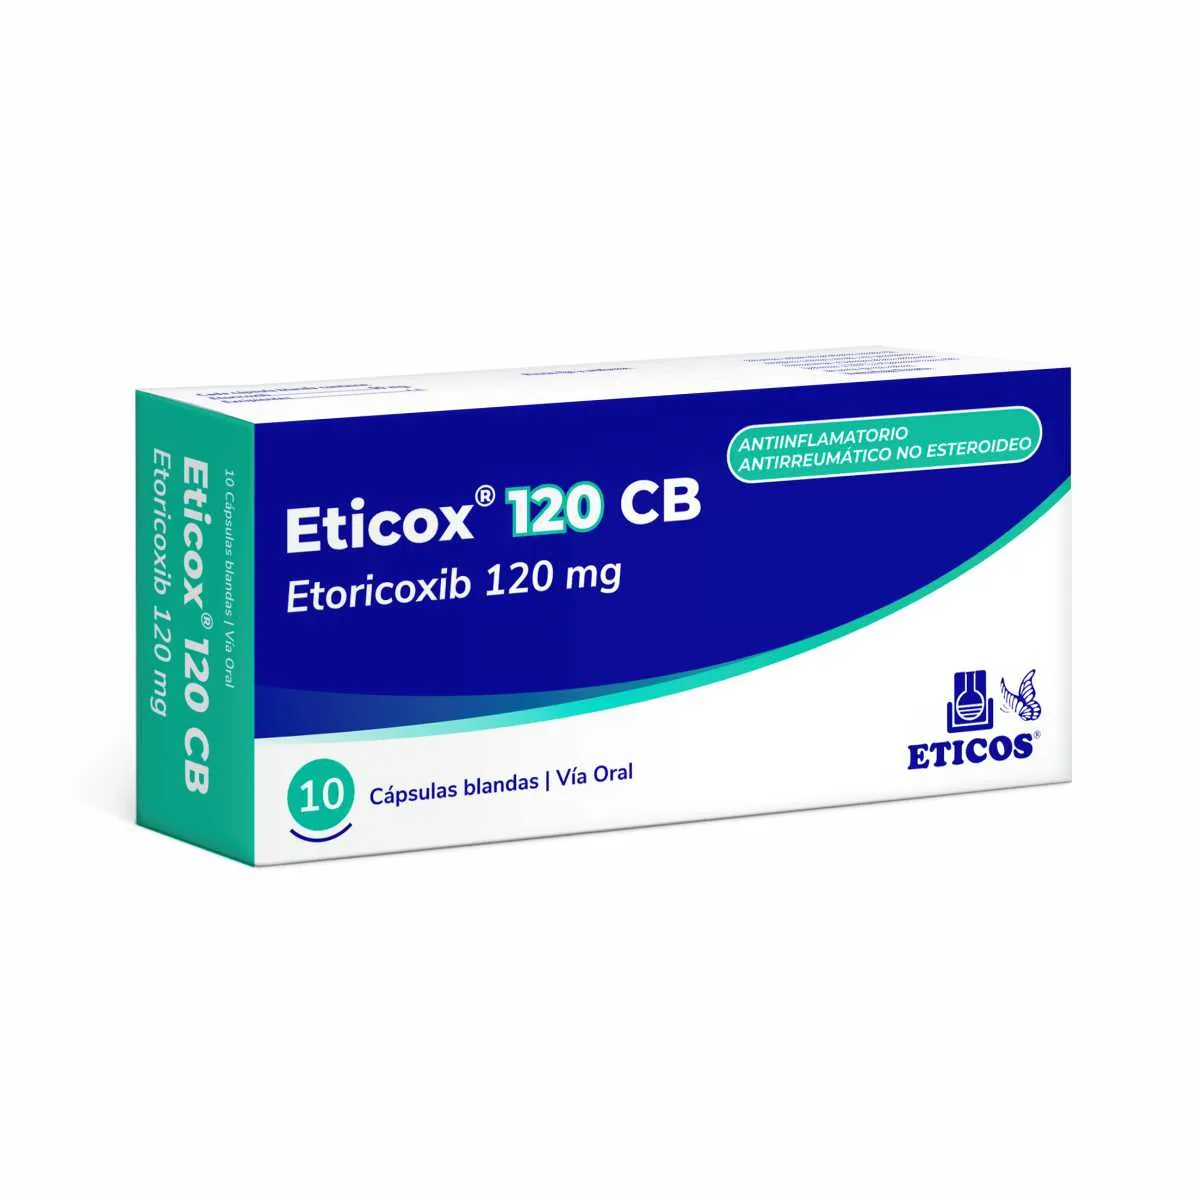 Eticox 120 CB Etoricoxib 120 mg - Cont. 10 Capsulas Blandas